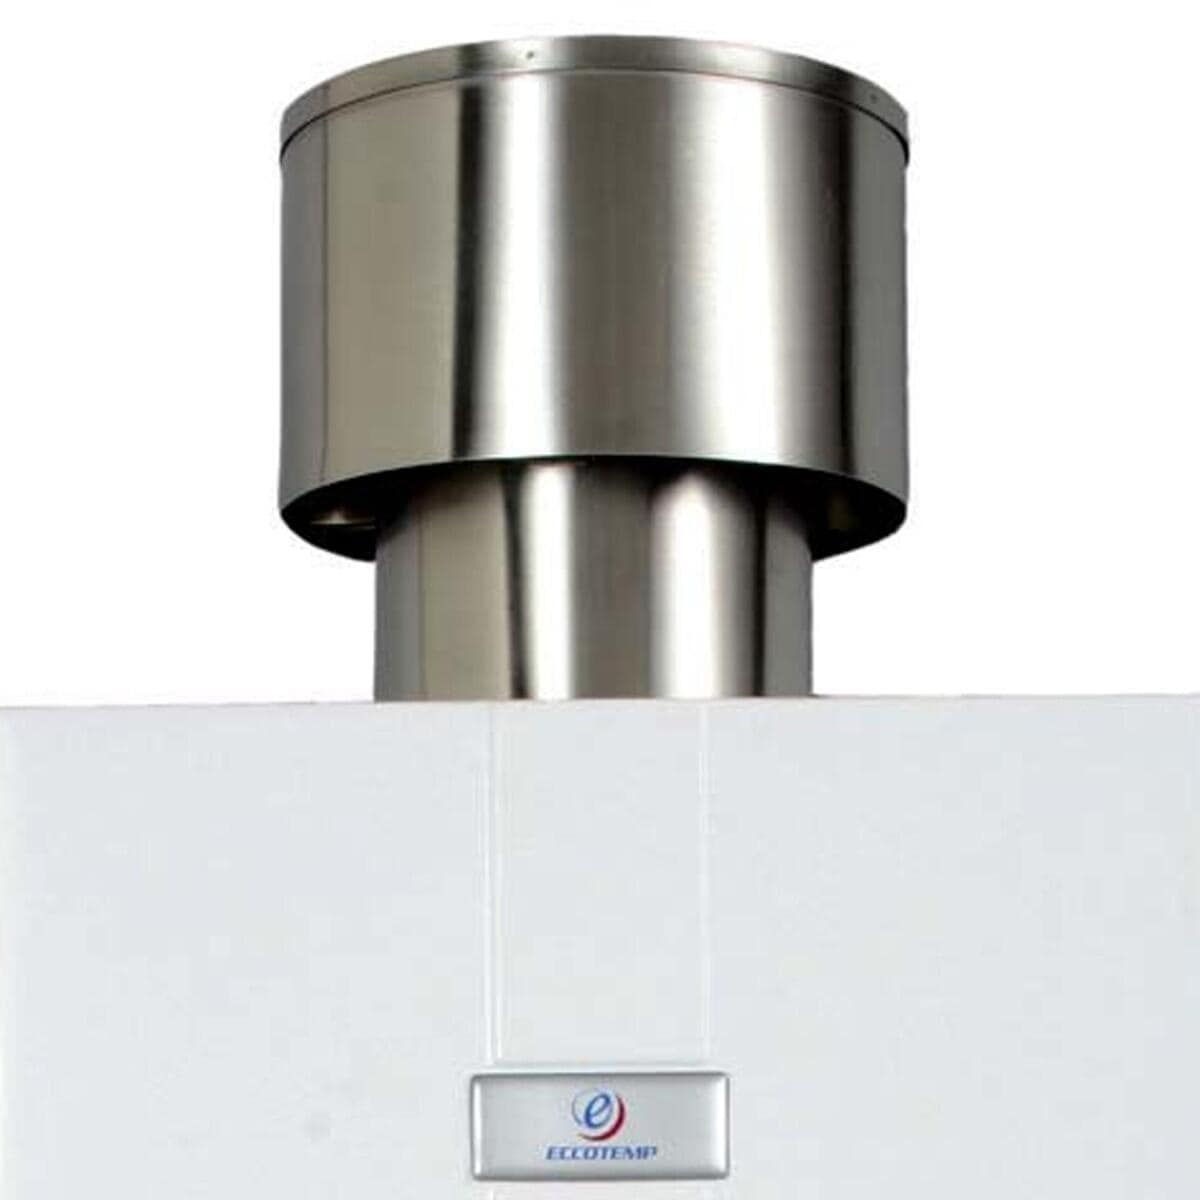 Tragbarer Propangas Durchlauferhitzer 5 Liter von Eccotemp (Modell